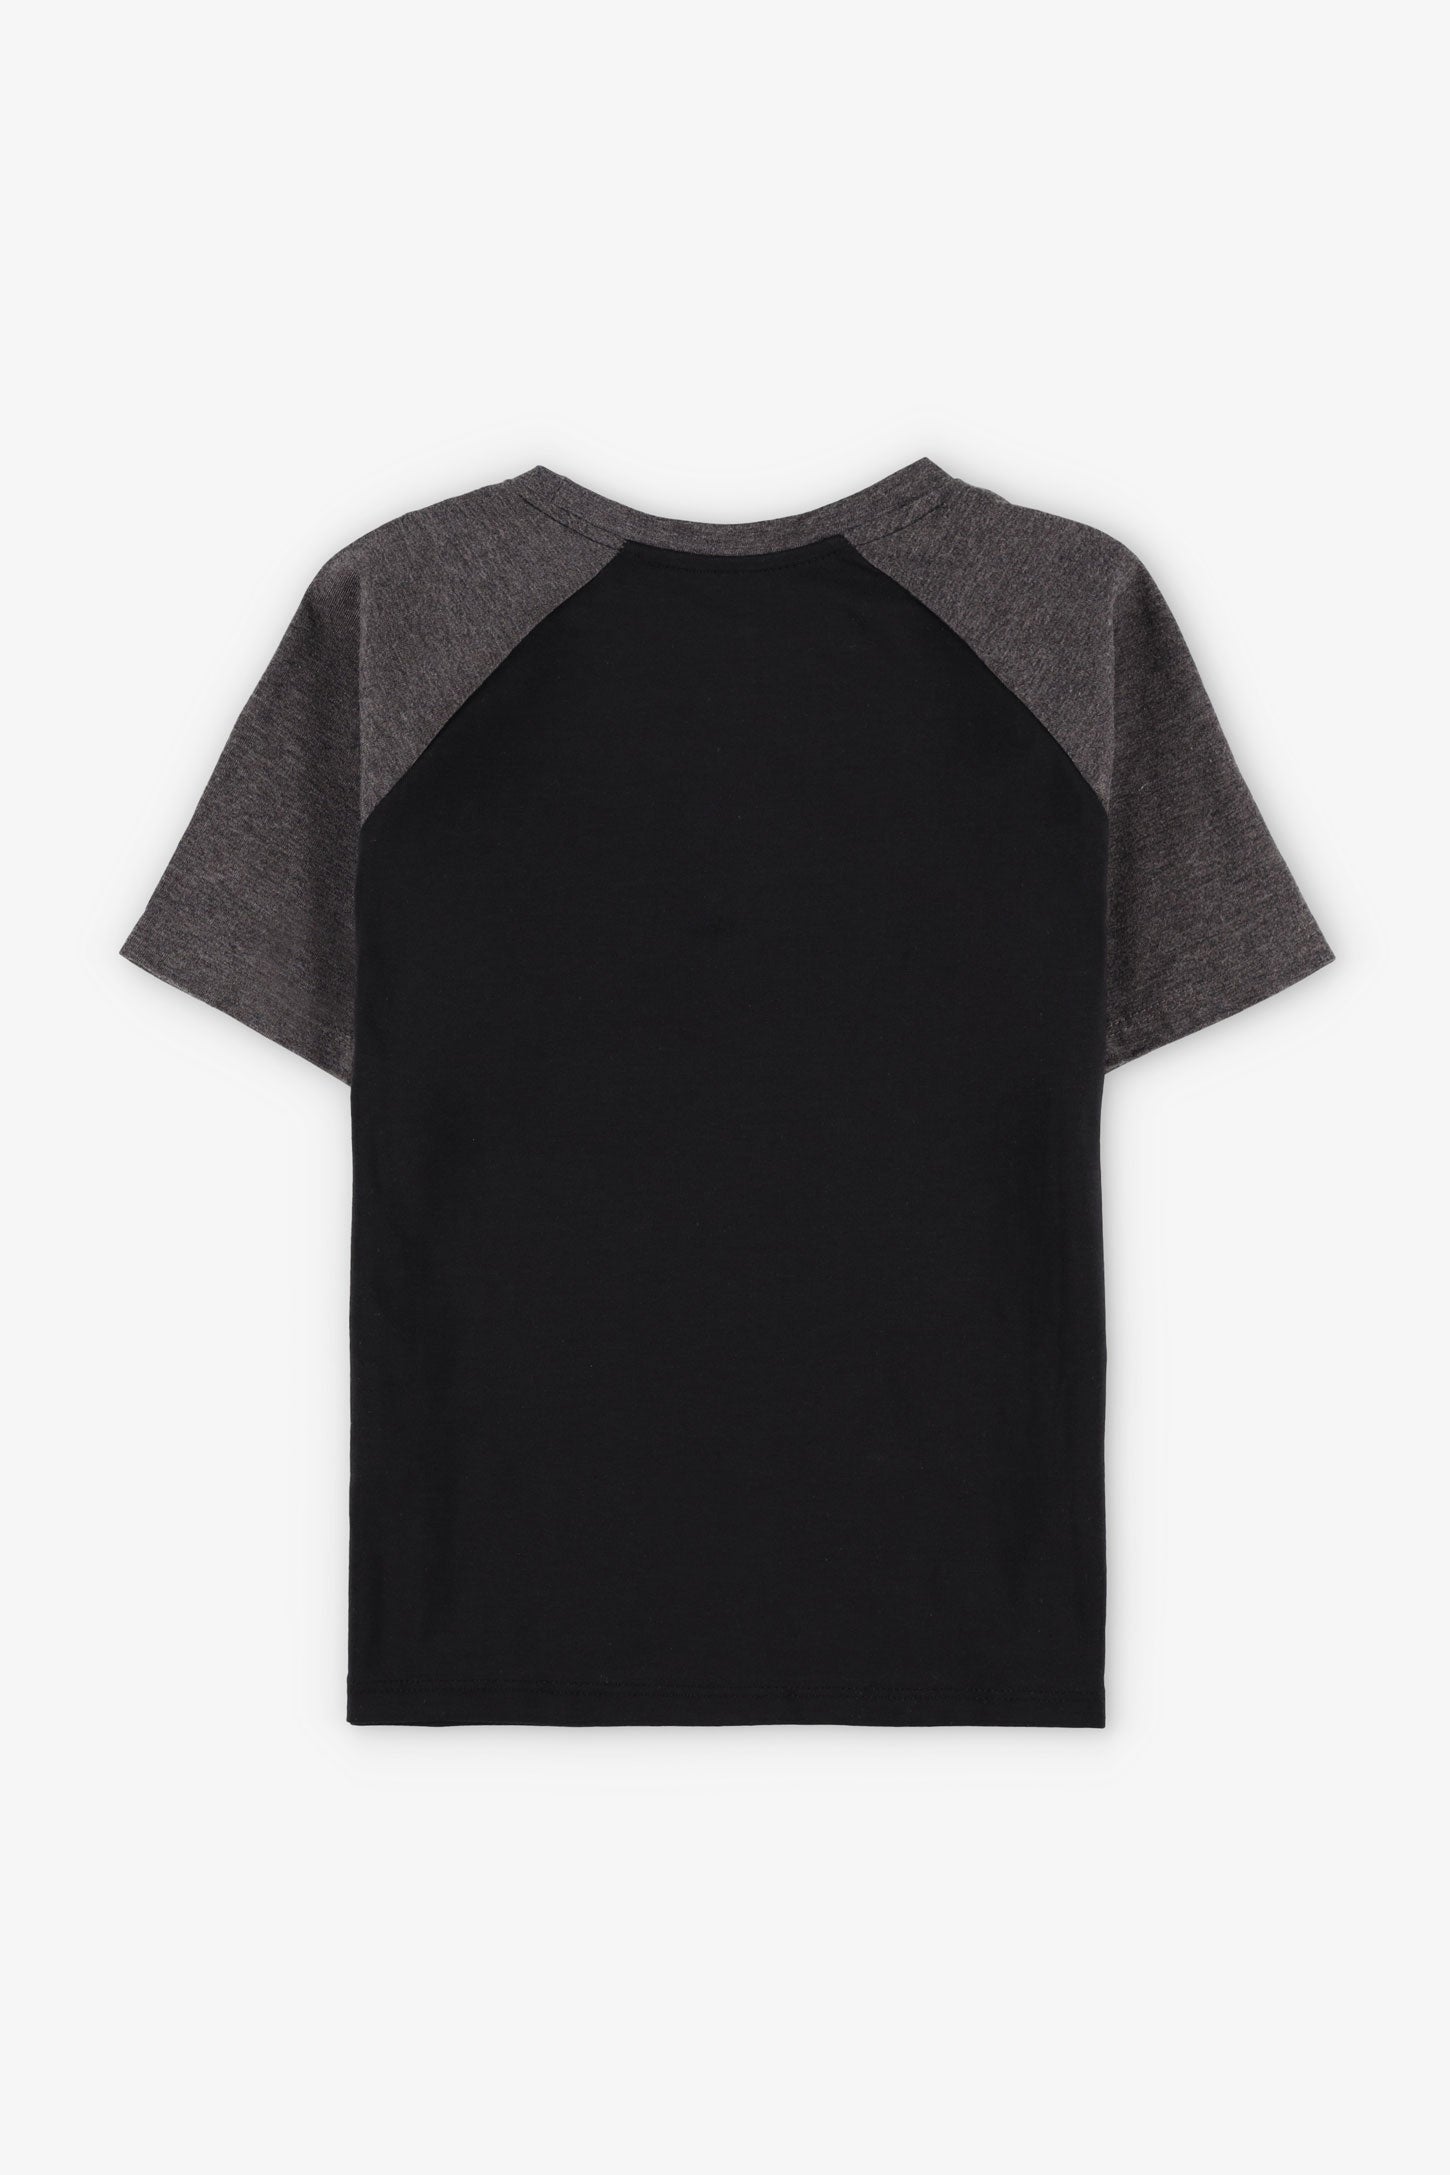 T-shirt col rond imprimé en coton, 2/20$ - Enfant garçon && NOIR